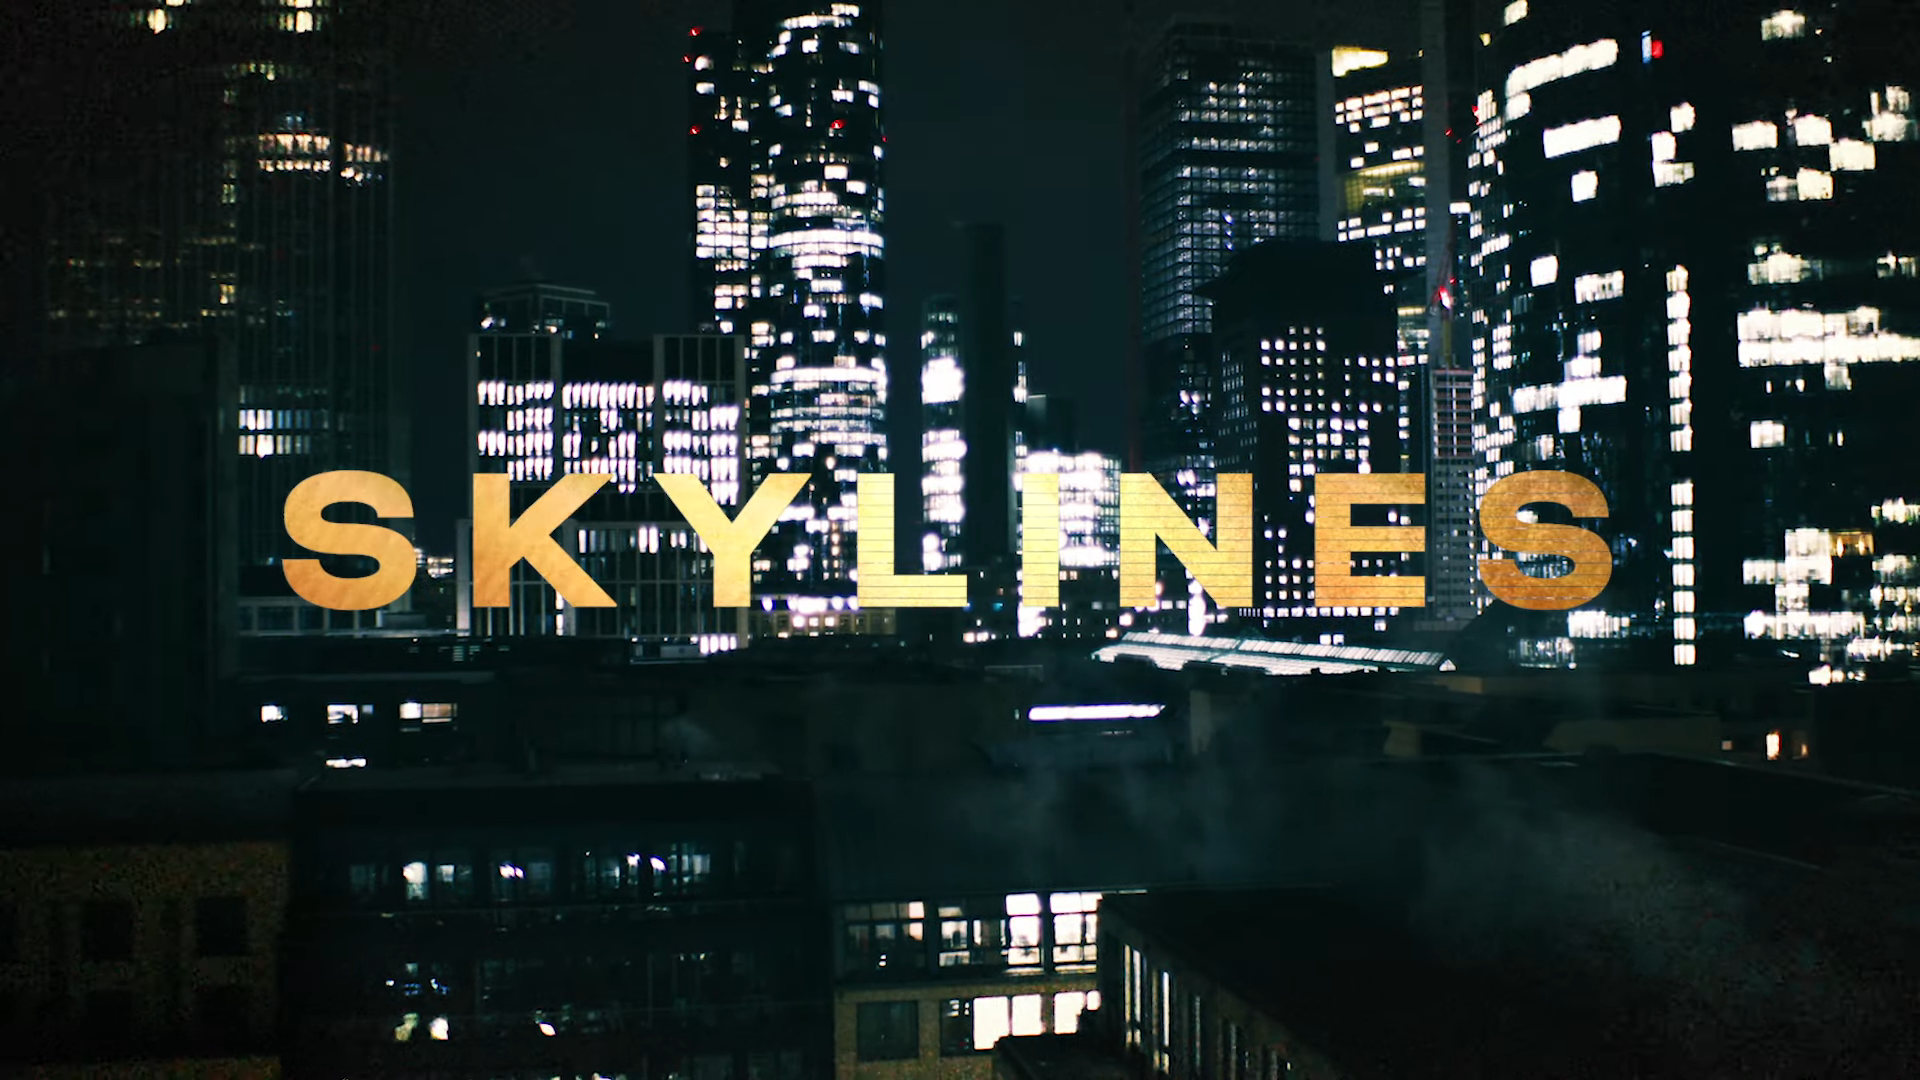 Skylines Netflix Trailer, Netflix Music Series, Netflix Drama Series, Coming to Netflix in September 2019